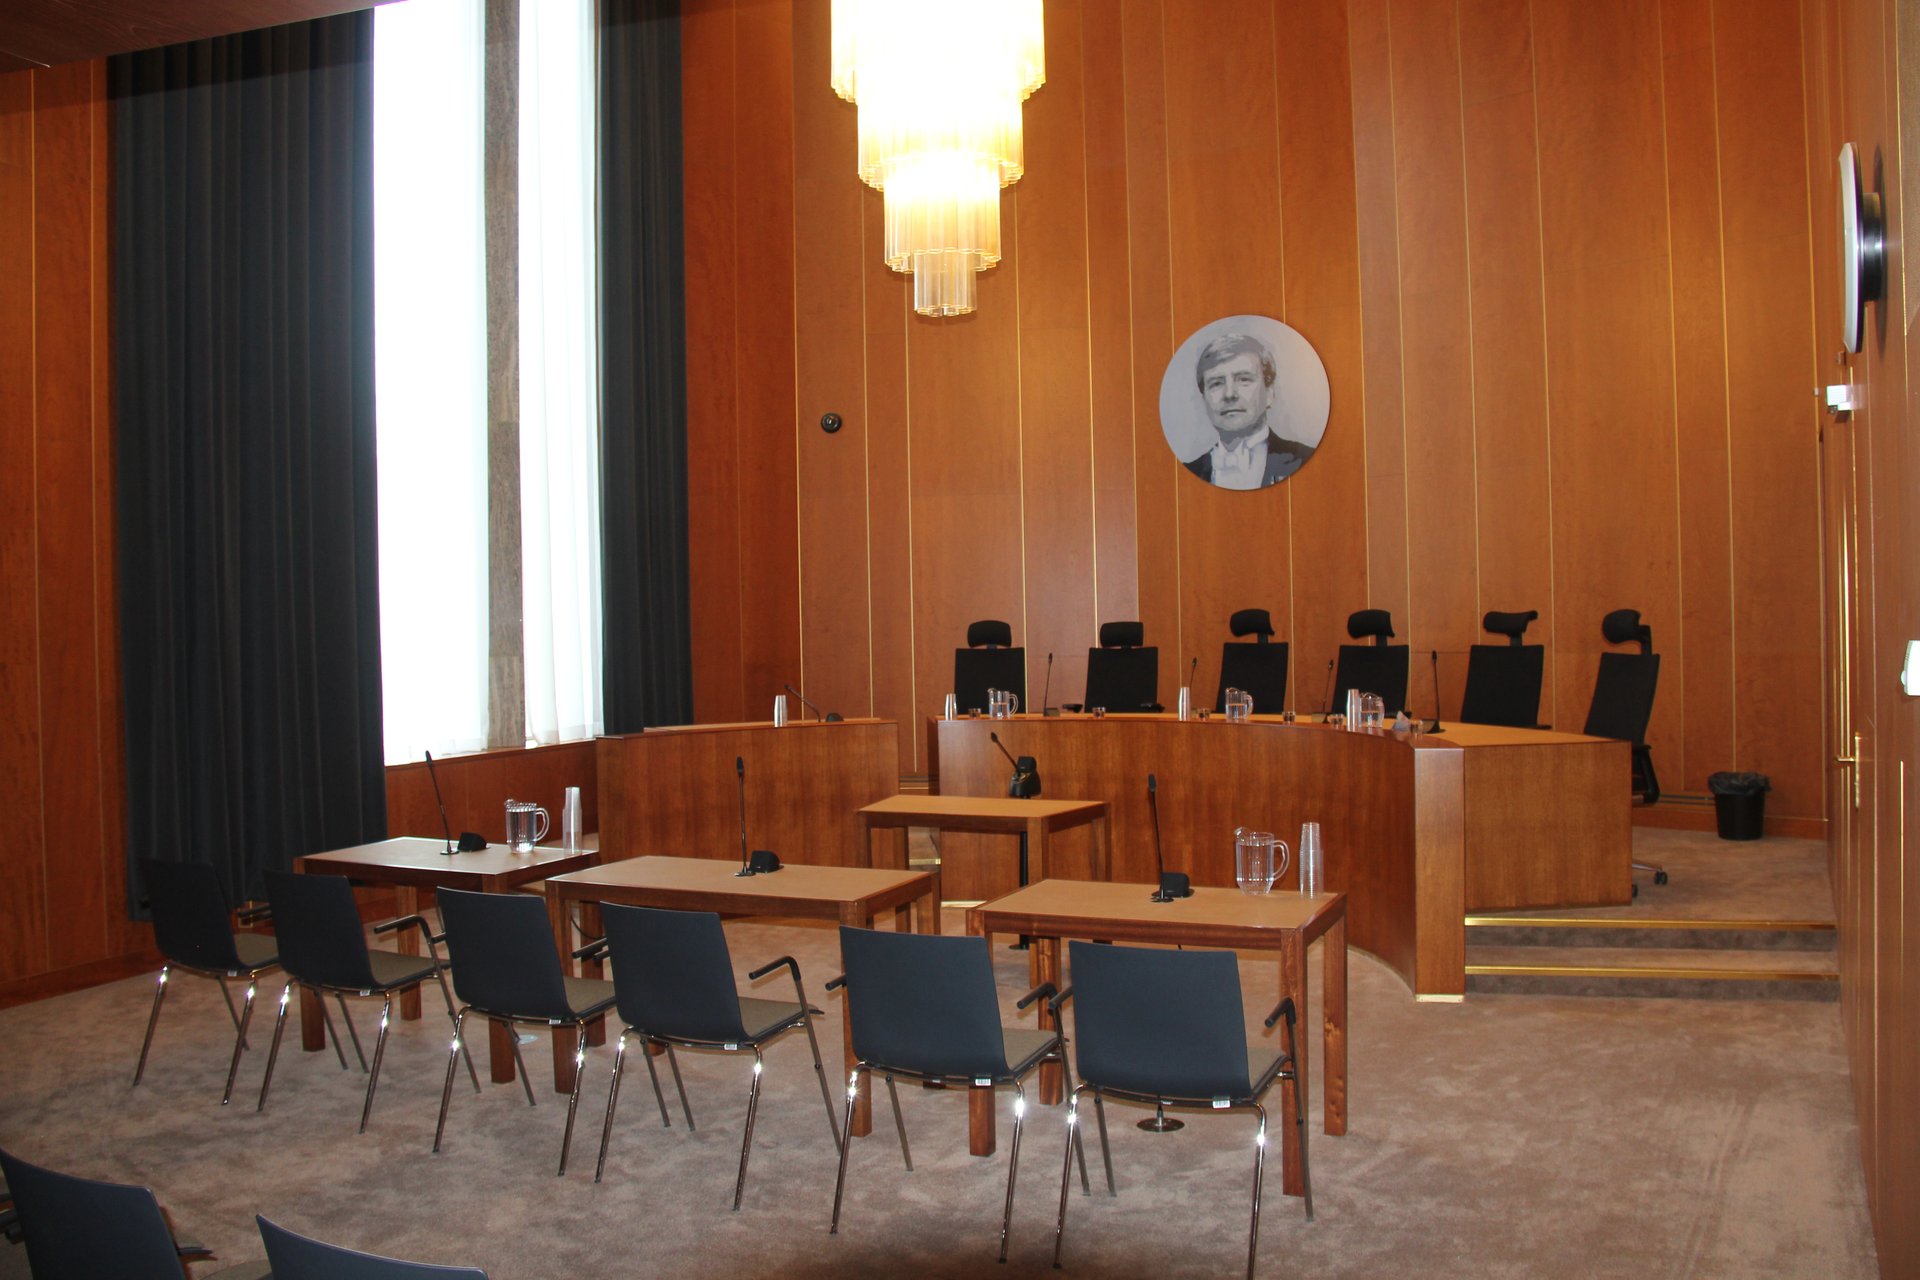 Rechtbank Zwolle 1